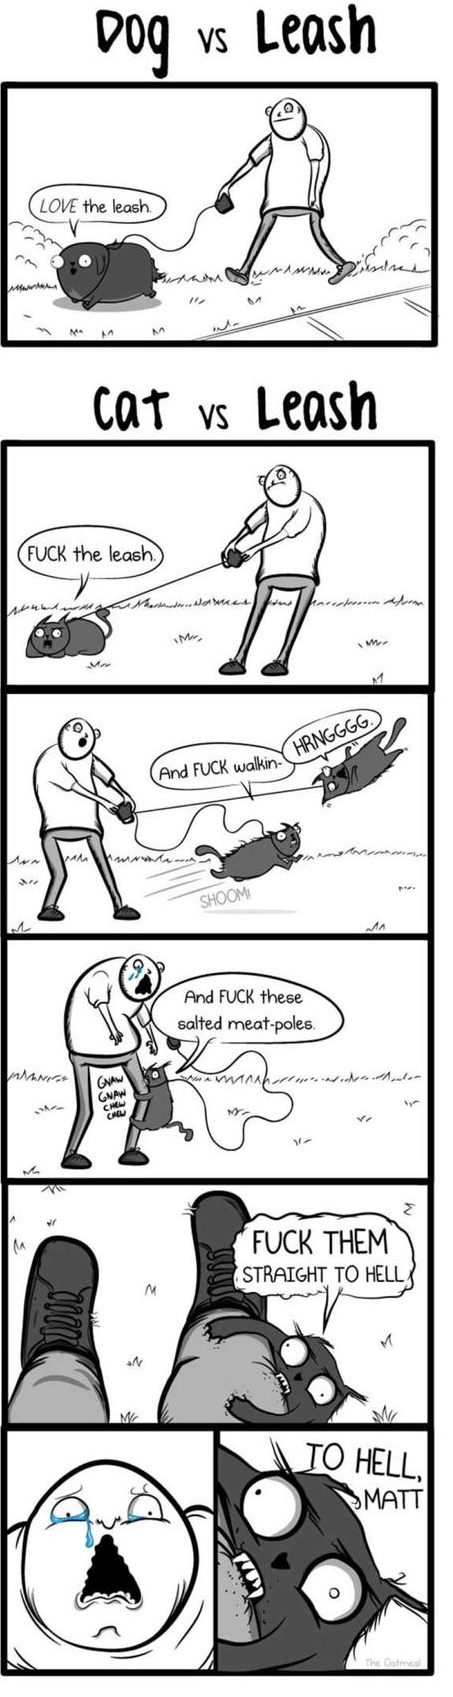 dog-cat-comics-leash